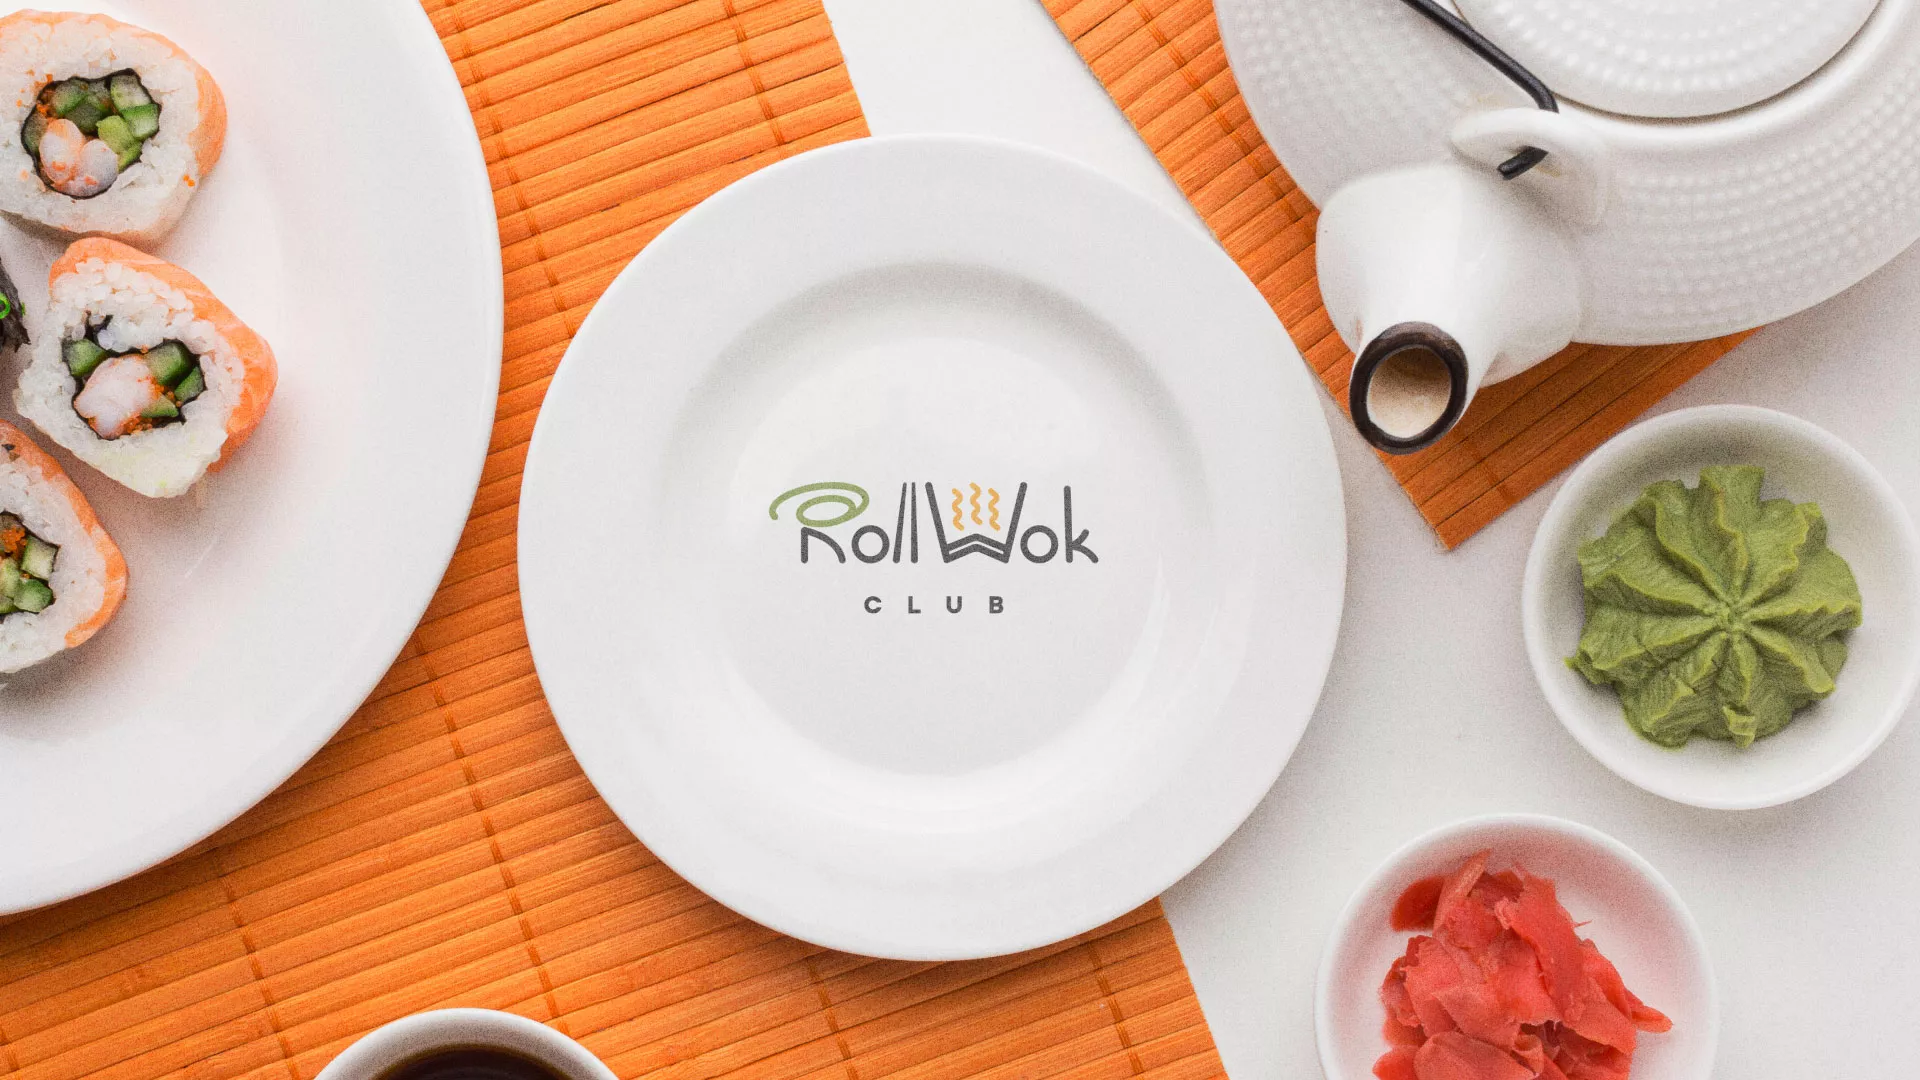 Разработка логотипа и фирменного стиля суши-бара «Roll Wok Club» в Изобильном